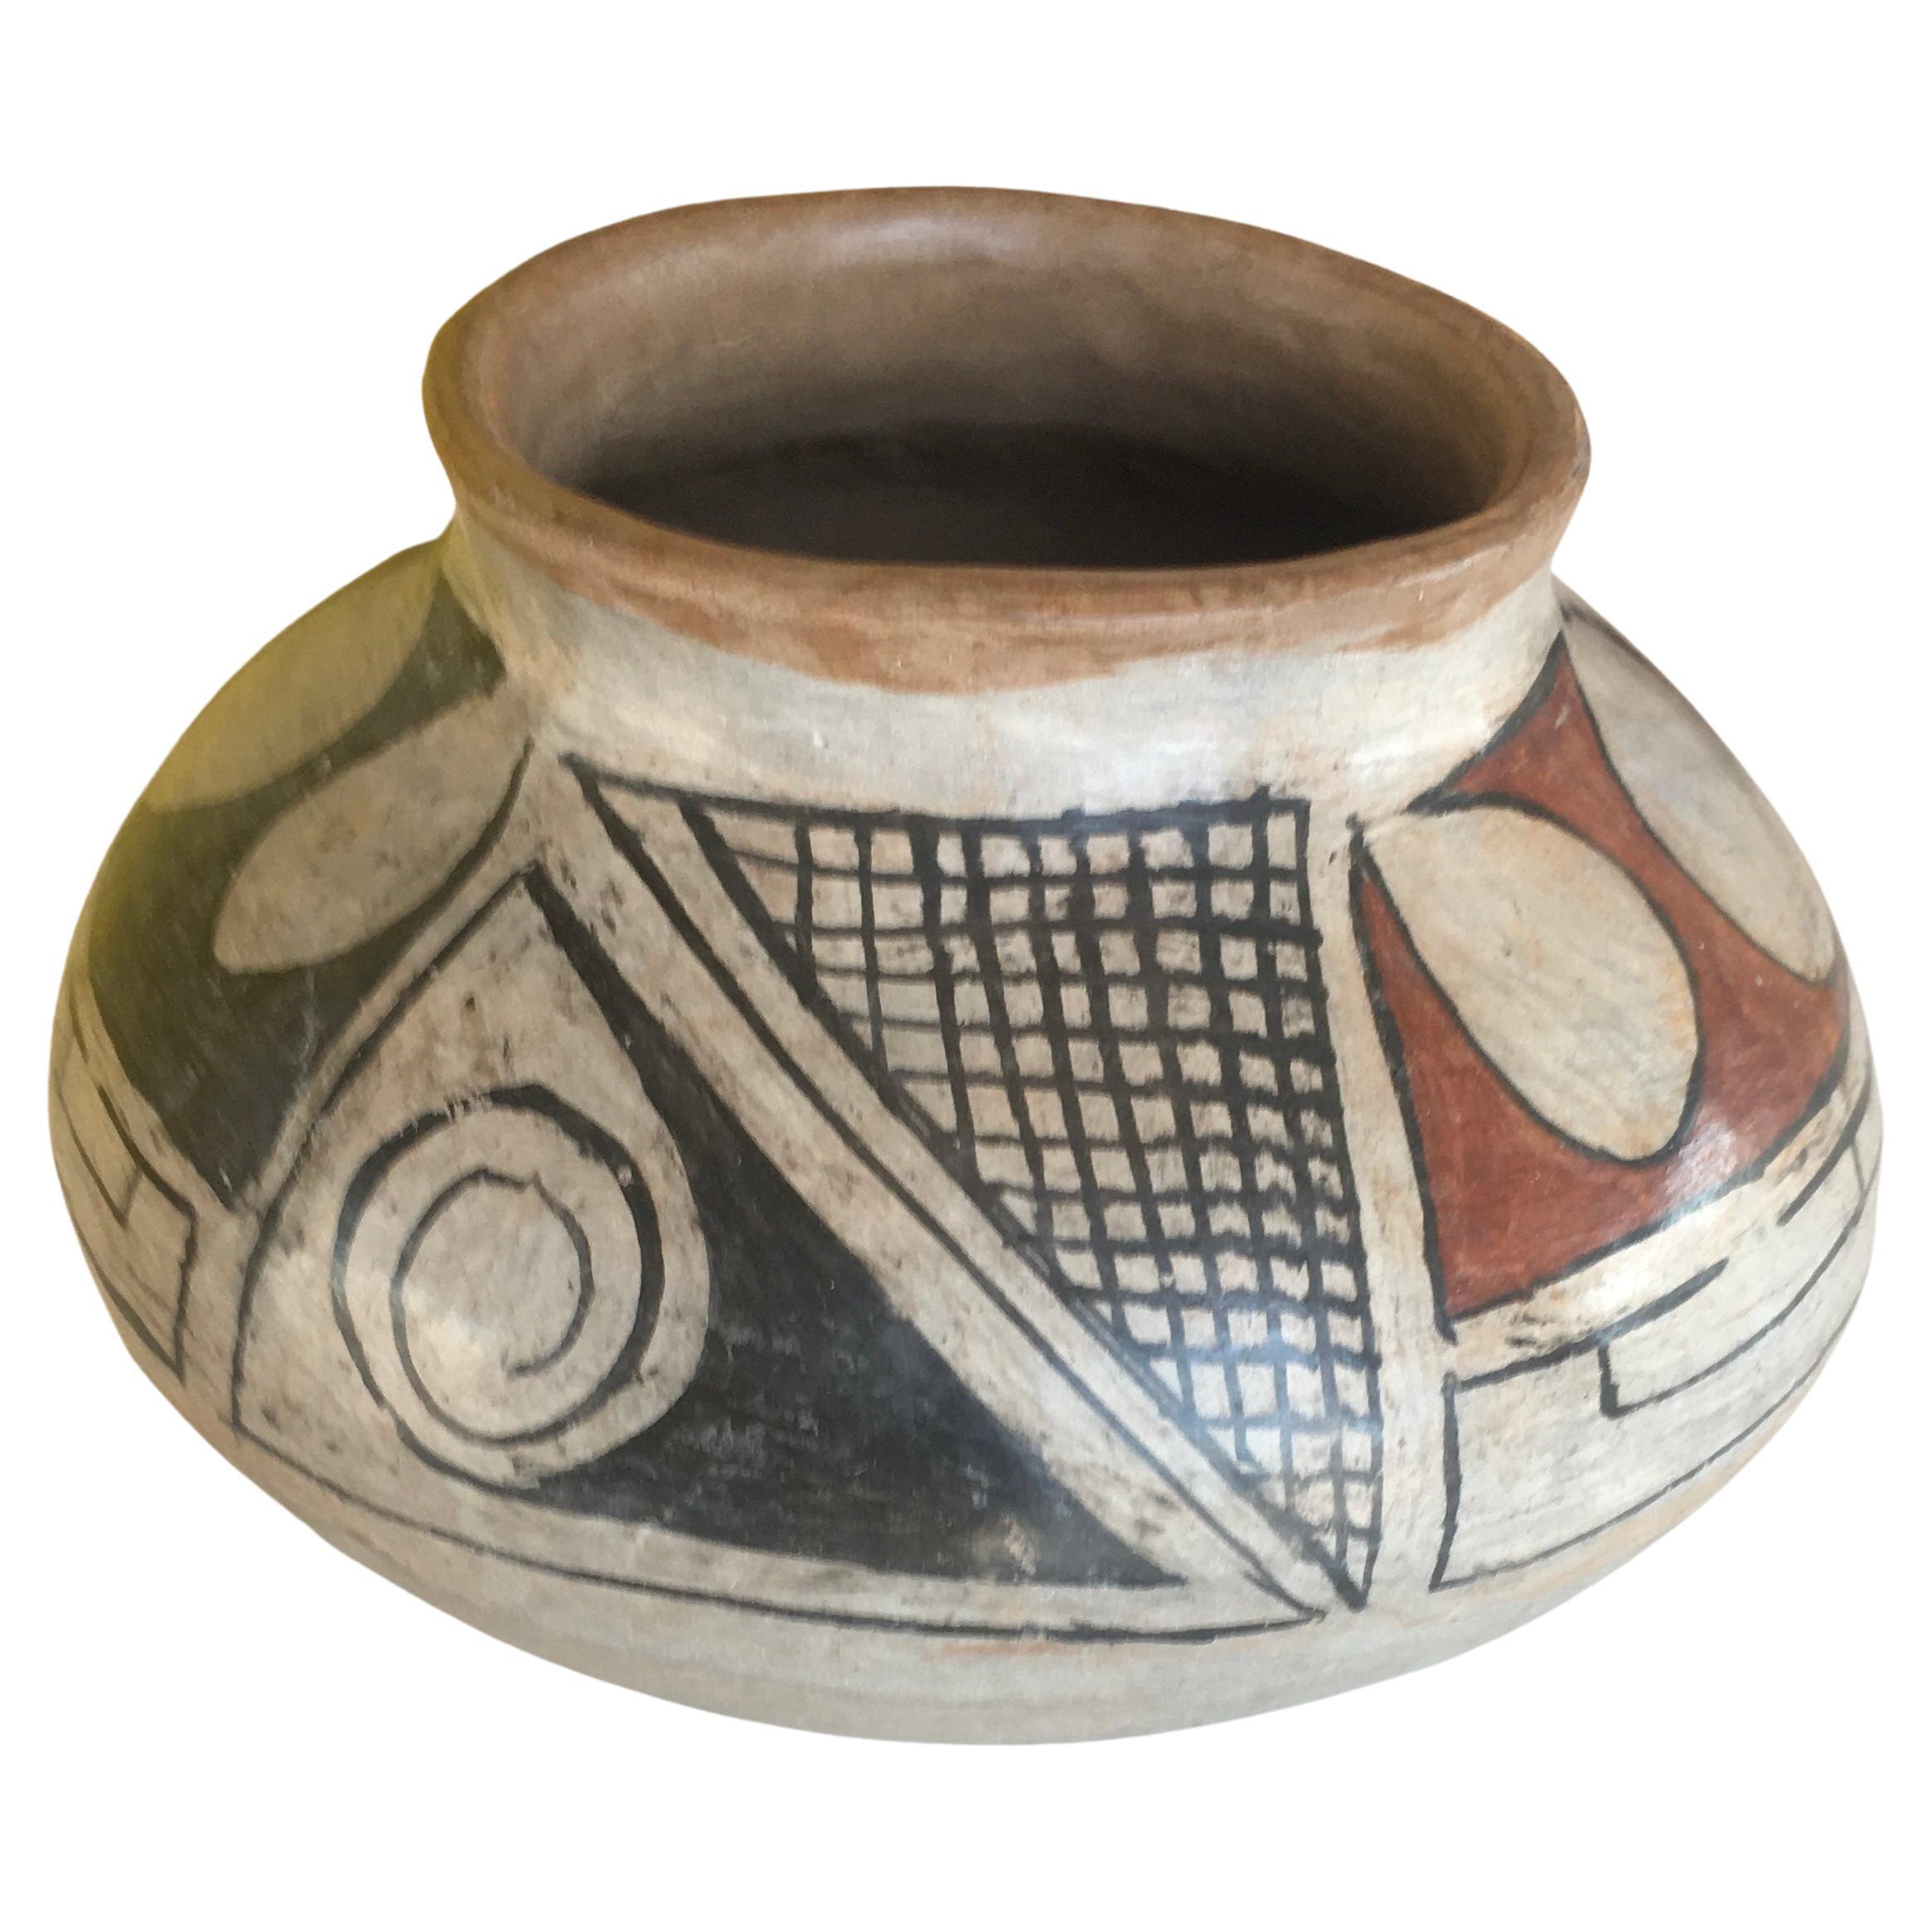 Vase eines amerikanischen Ureinwohners, 1930er Jahre